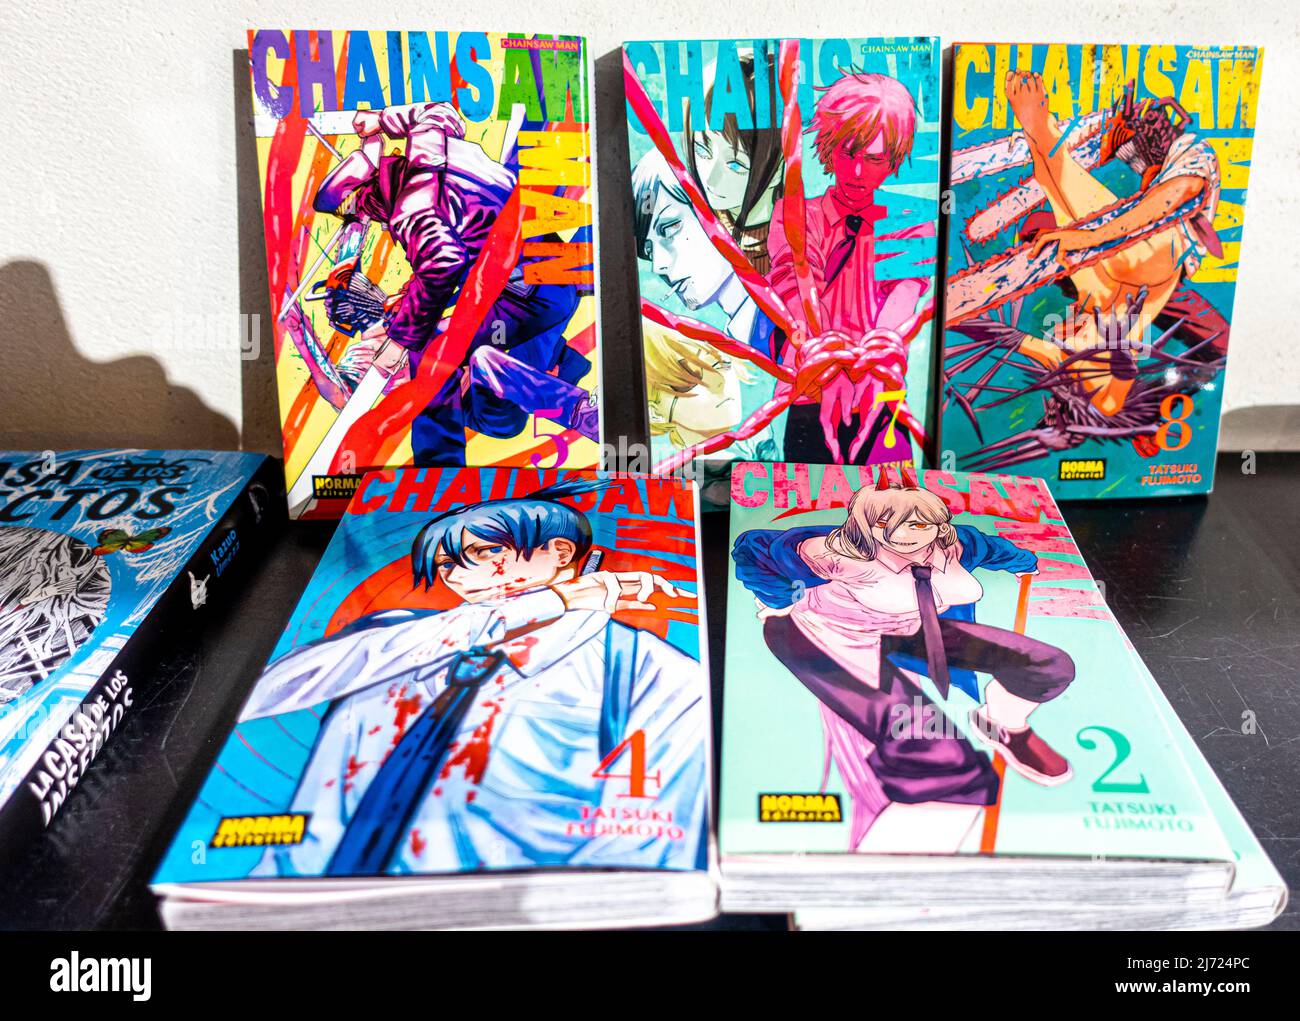 ChainSAW Man Manga livres sur étagère, bandes dessinées japonaises par Tatsuki Fujimoto Banque D'Images